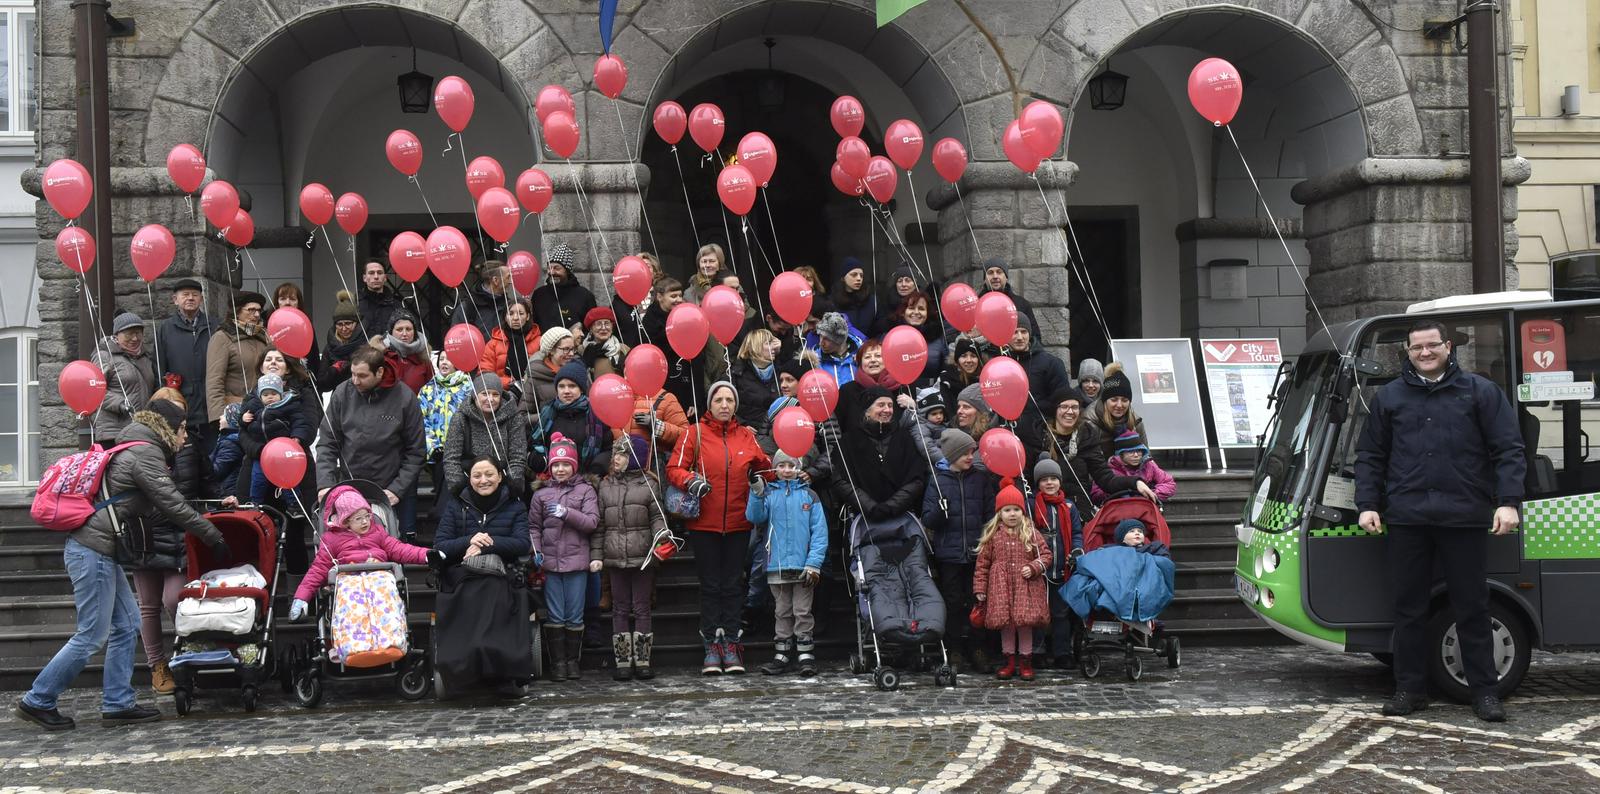 Fotografija je bila posneta na shodu rdečih balonov leta 2018. Foto: BoBo